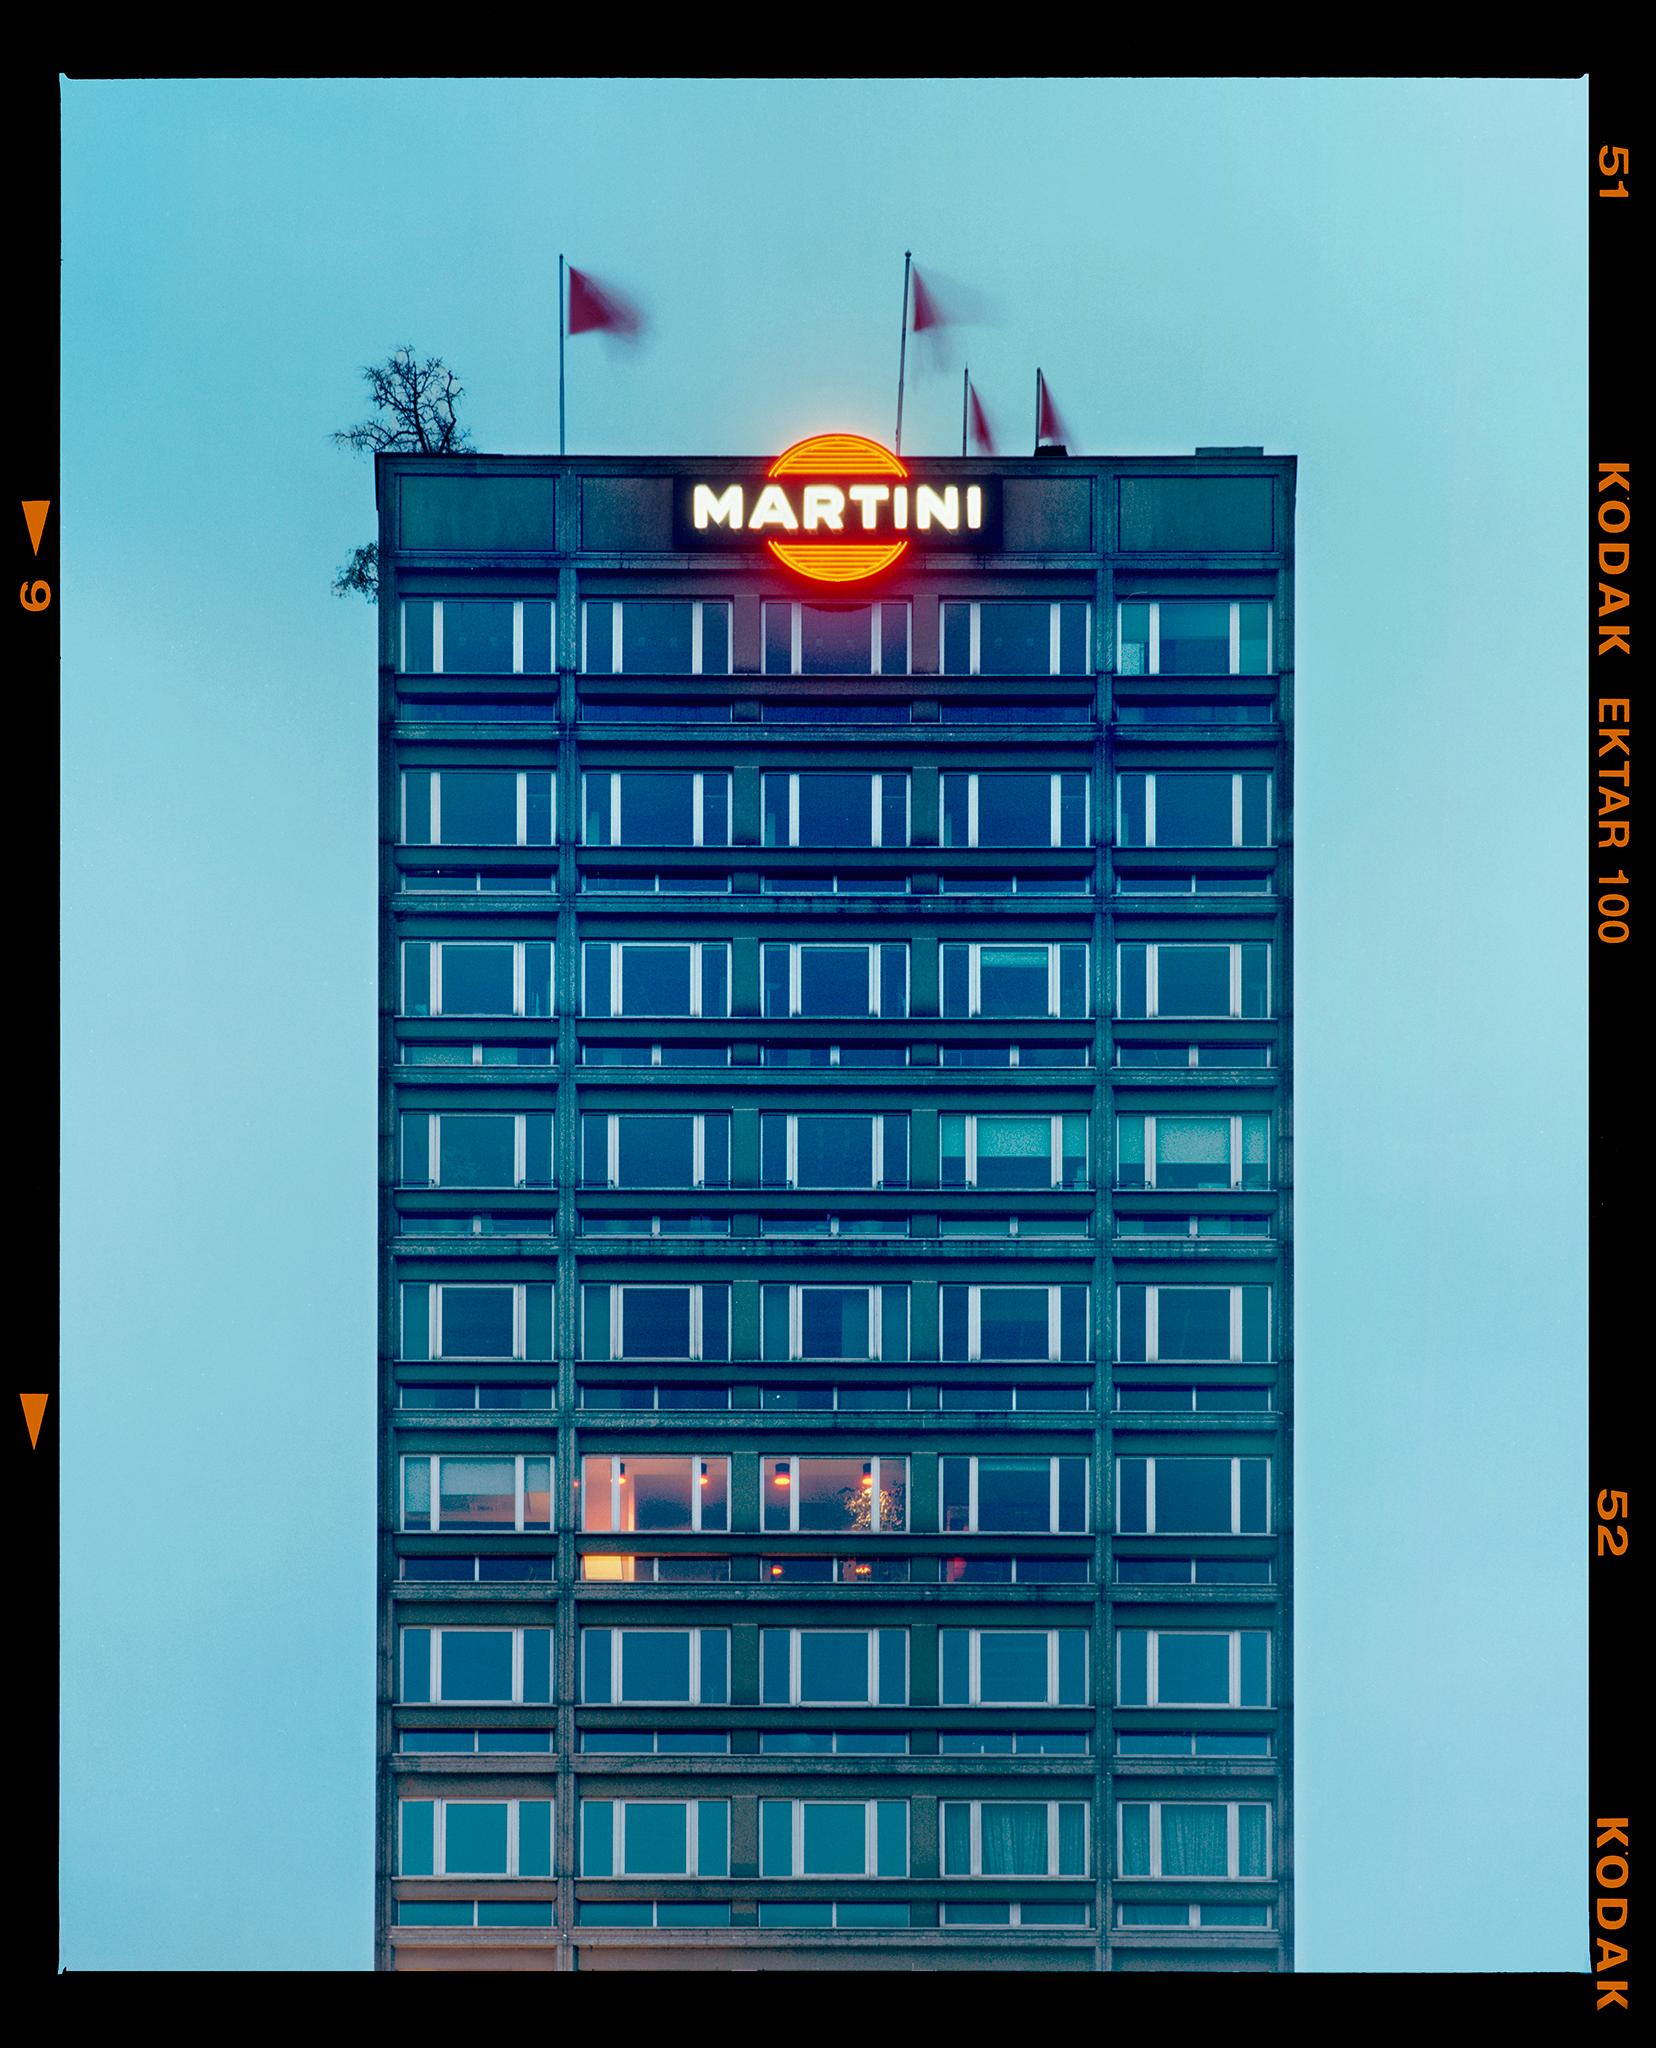 Martini bleu et Martini gris, Milan. Photographies d'architecture italienne par Richard Heeps.

Cette offre concerne deux œuvres d'art encadrées individuellement, chacune mesurant 39,3